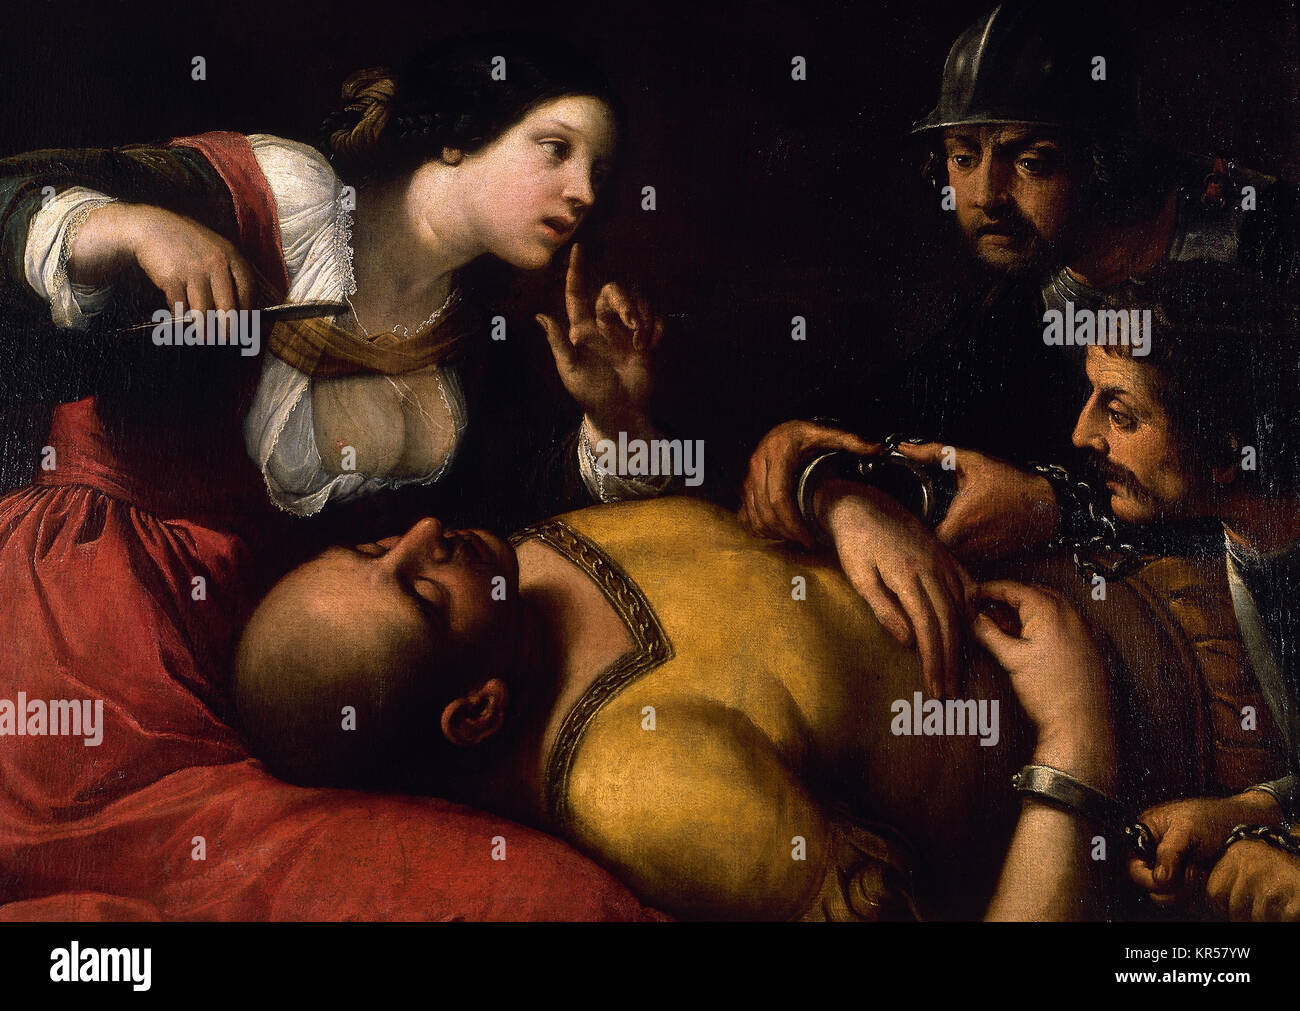 Caravaggio (1571-1610). Italienischer Maler. Barock. Samsom und Delihah. Öl con canva. 17. Jahrhundert. Krankenhaus von Tavera, Toledo. Die Region Kastilien-La Mancha. Spanien. Stockfoto